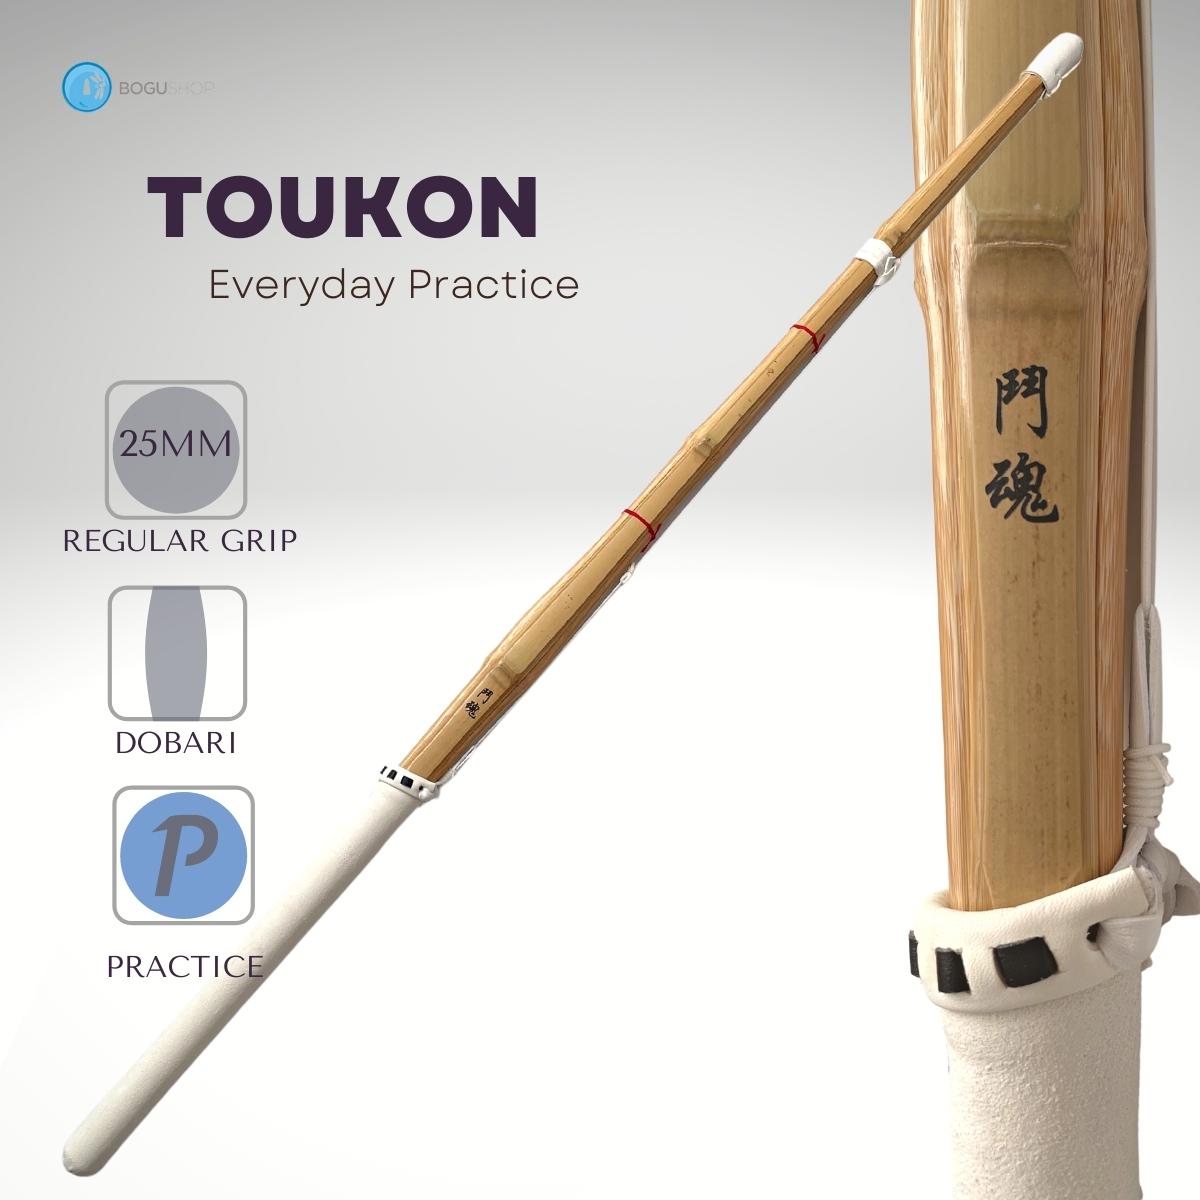 Durable Quality "Toukon" practice Shinai (each)	